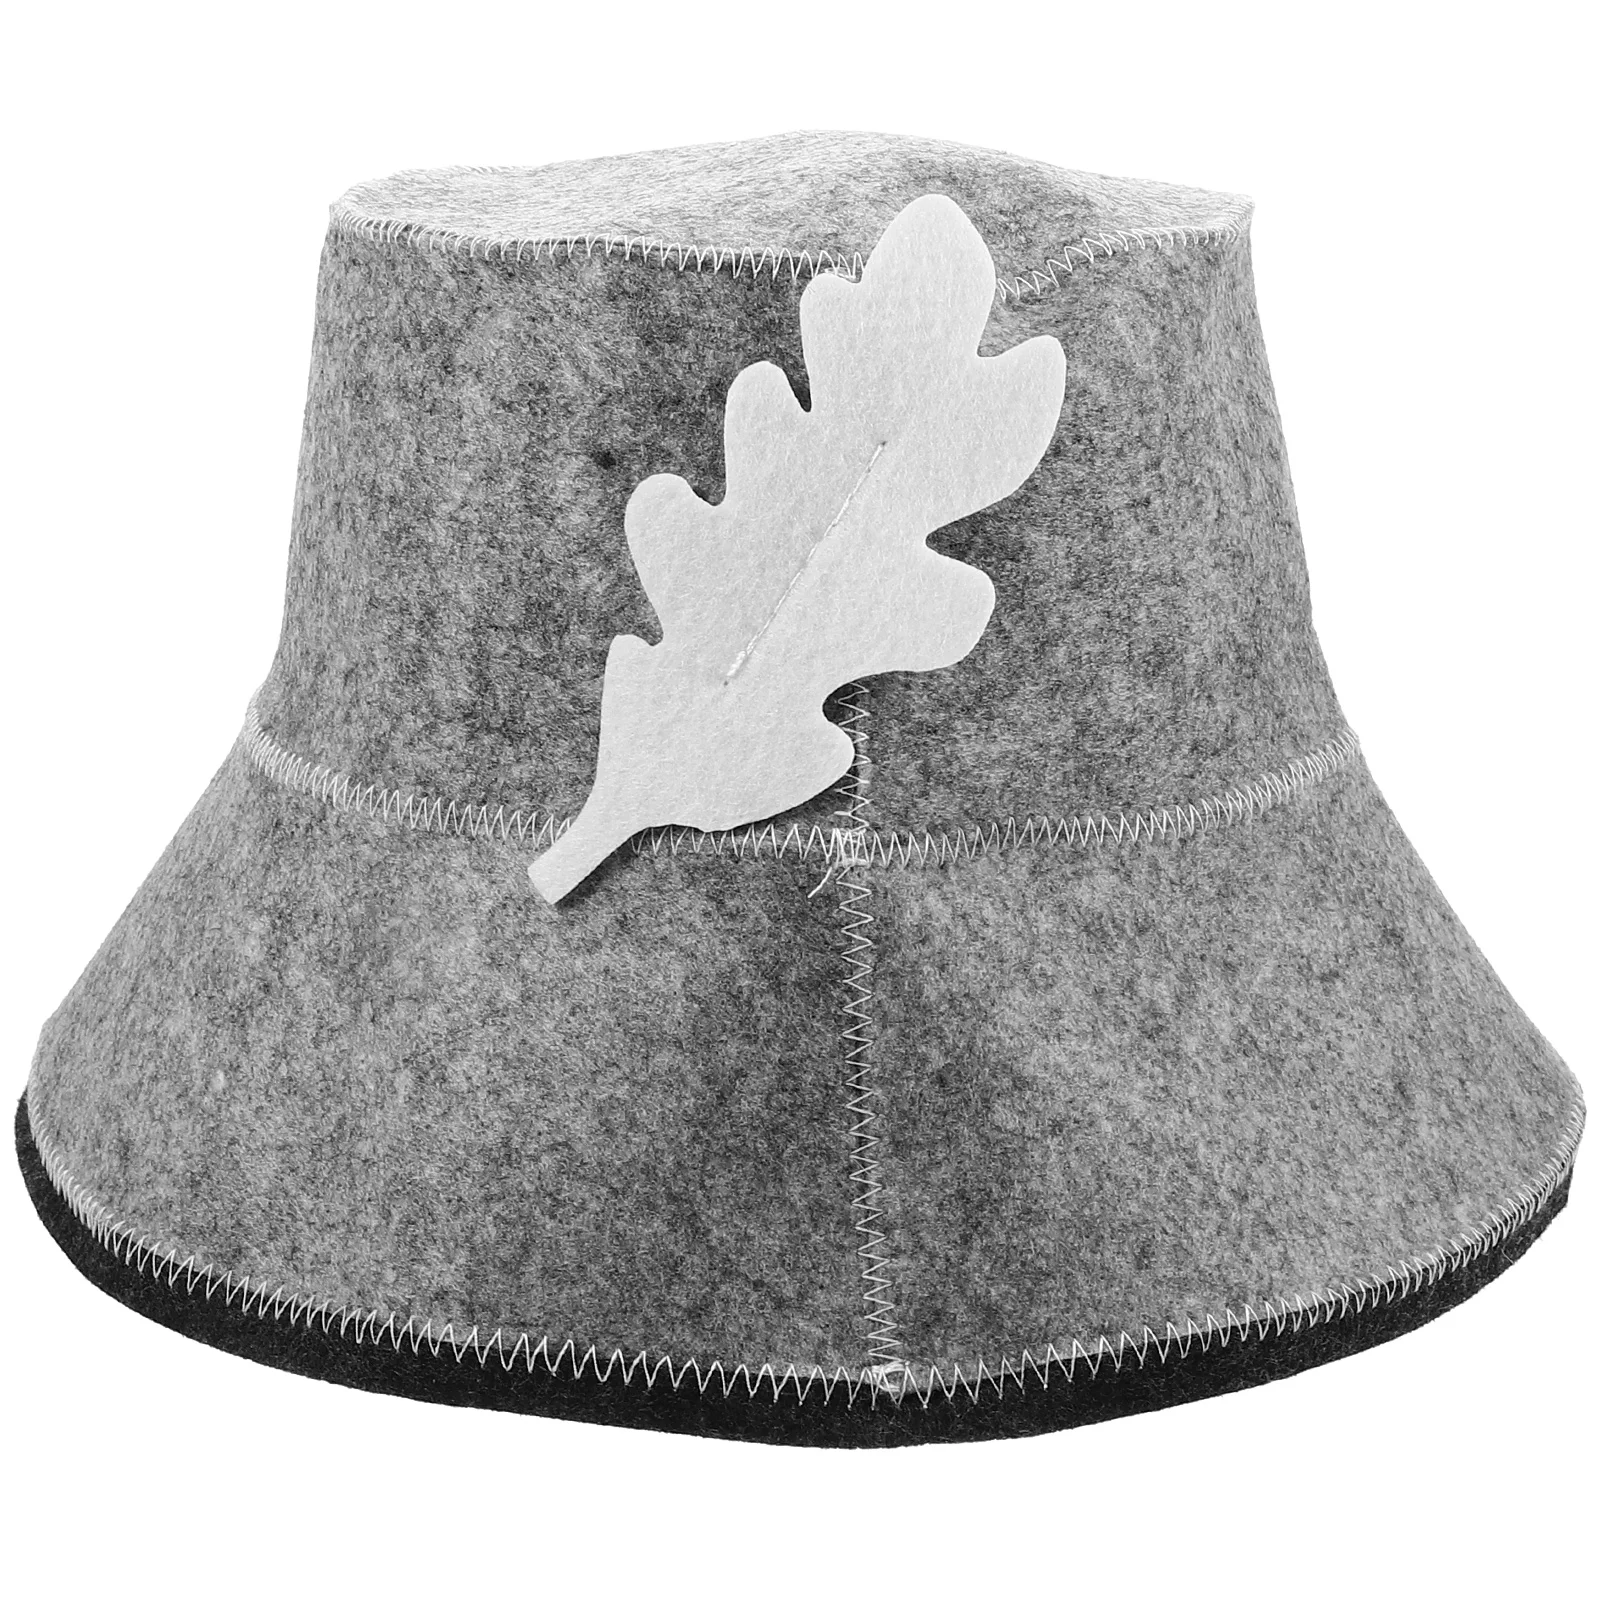 

Войлочная Шапка для бани модная шляпа для сауны, поглощающая воду шляпа для сауны, портативная Гибкая шляпа для сауны